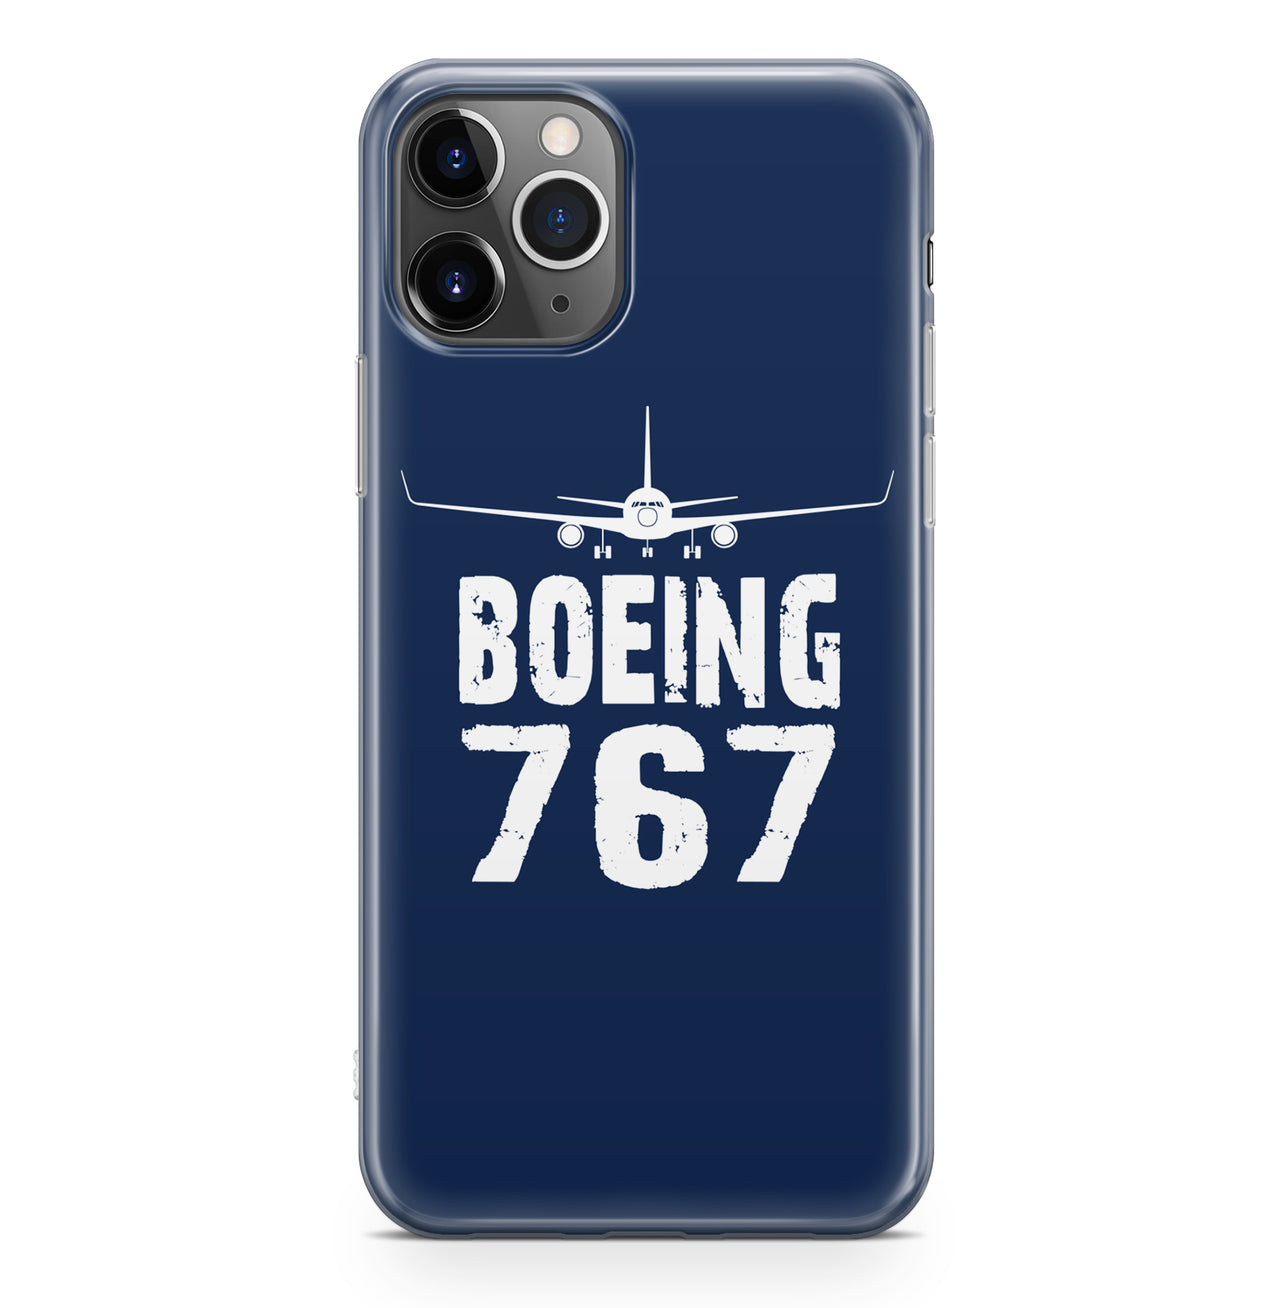 Boeing 767 & Plane Designed iPhone Cases